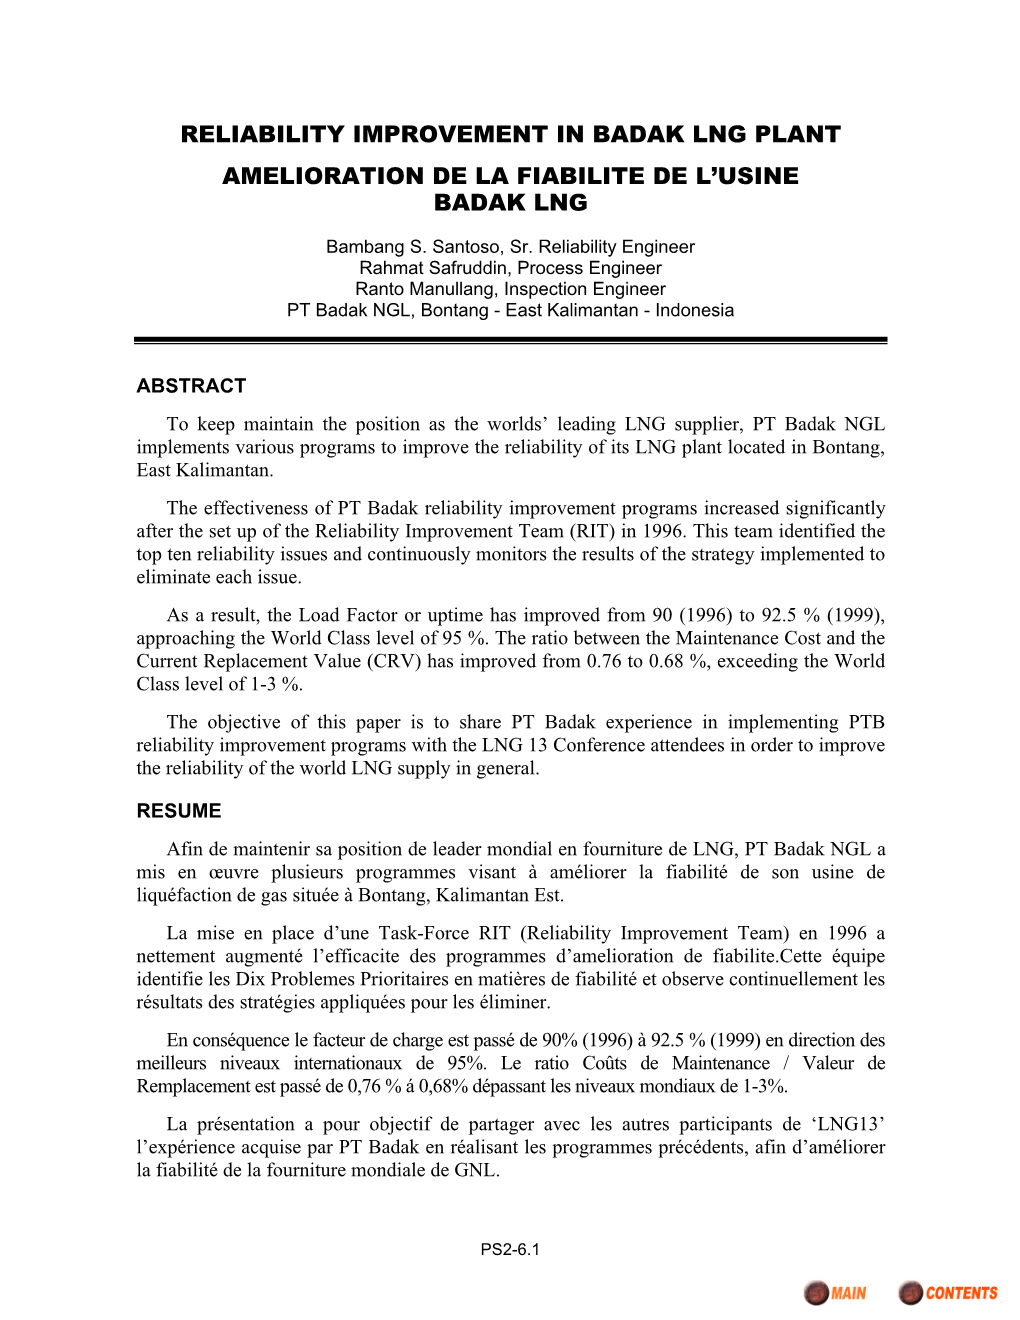 Reliability Improvement in Badak Lng Plant Amelioration De La Fiabilite De L’Usine Badak Lng